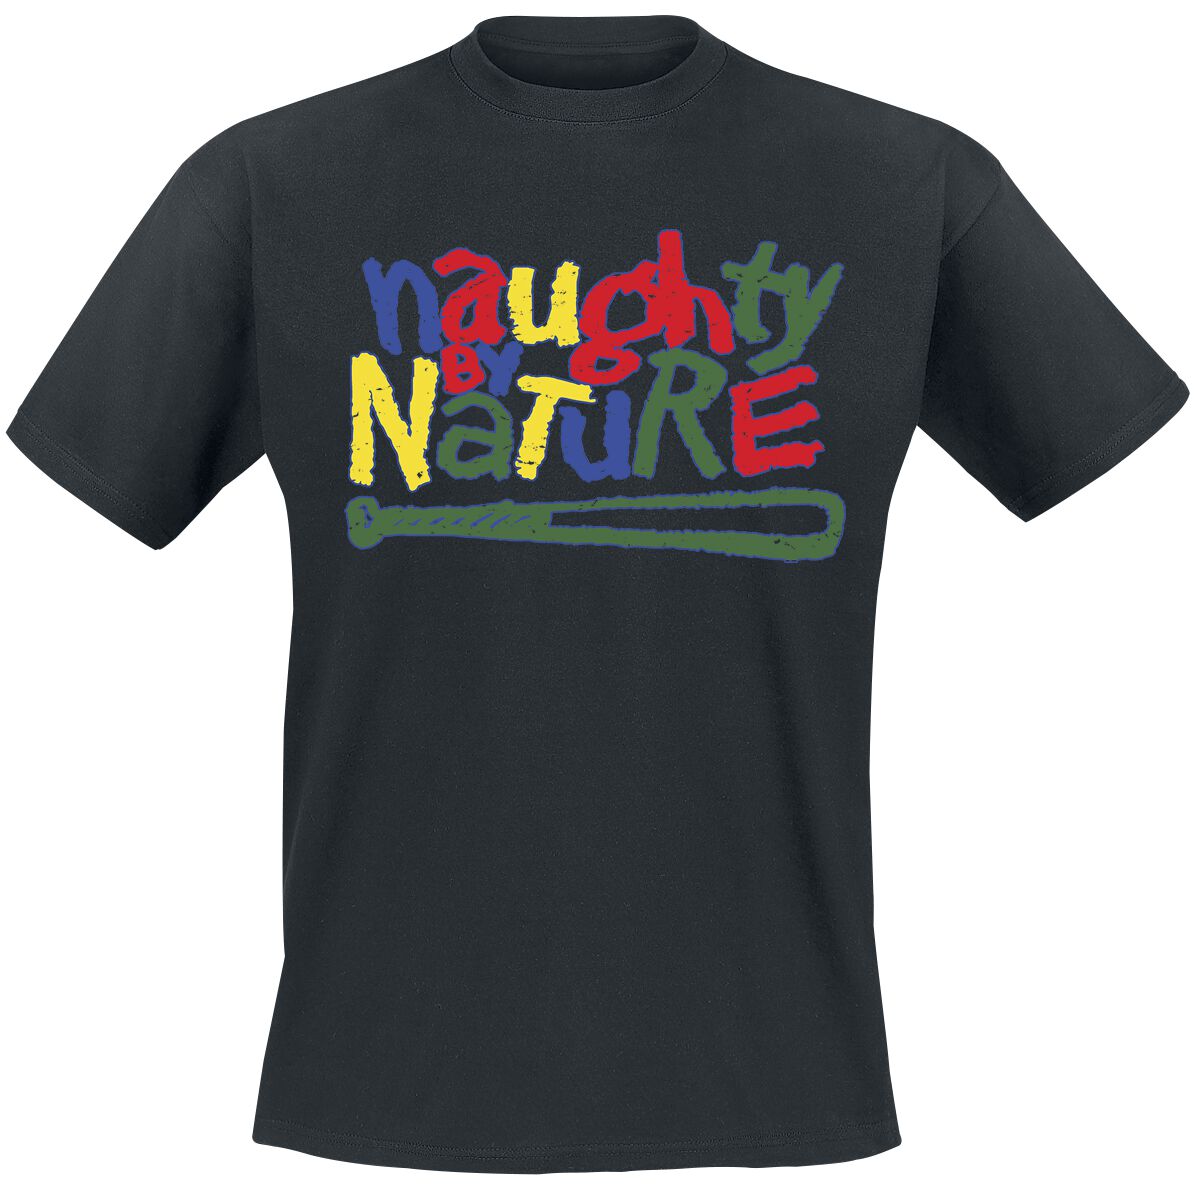 Naughty by Nature T-Shirt - Classic Colourful Logo - S bis 3XL - für Männer - Größe S - schwarz  - Lizenziertes Merchandise!